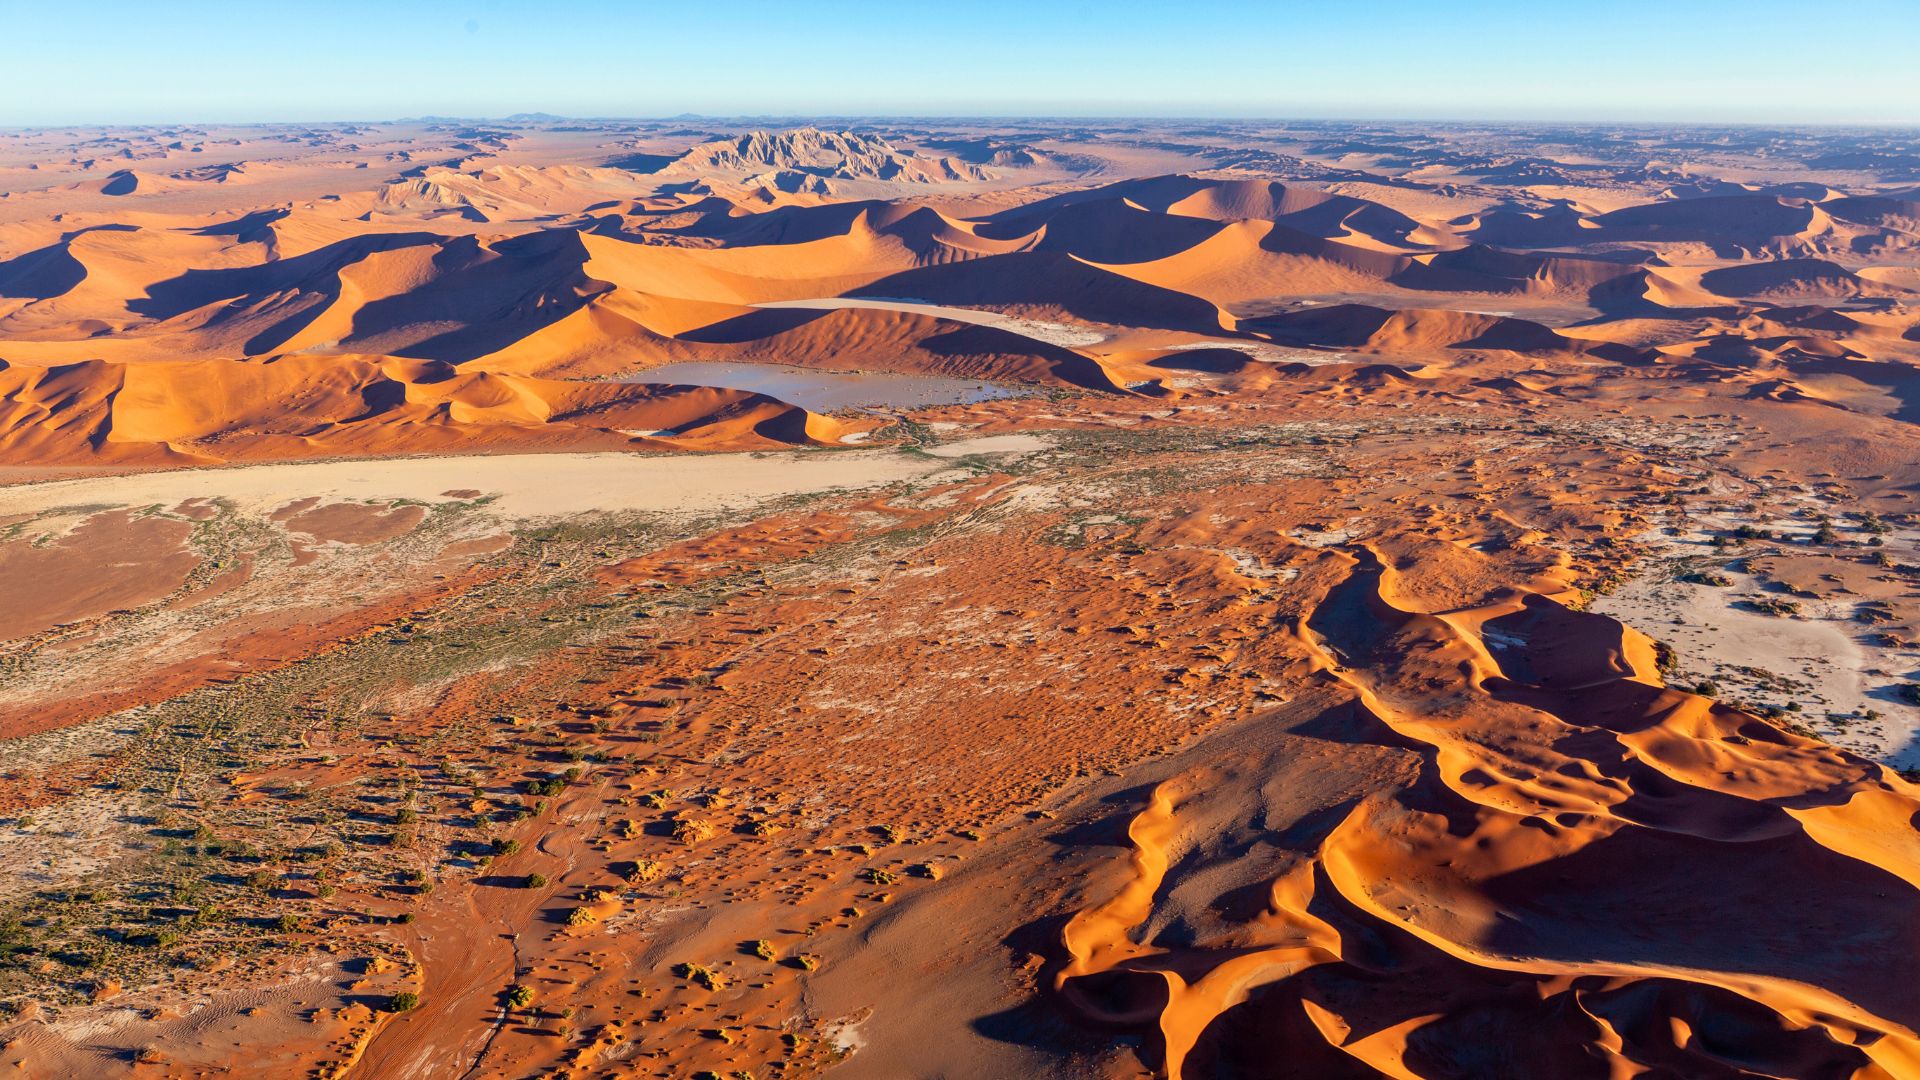 Parc national de Namib-Naukluft